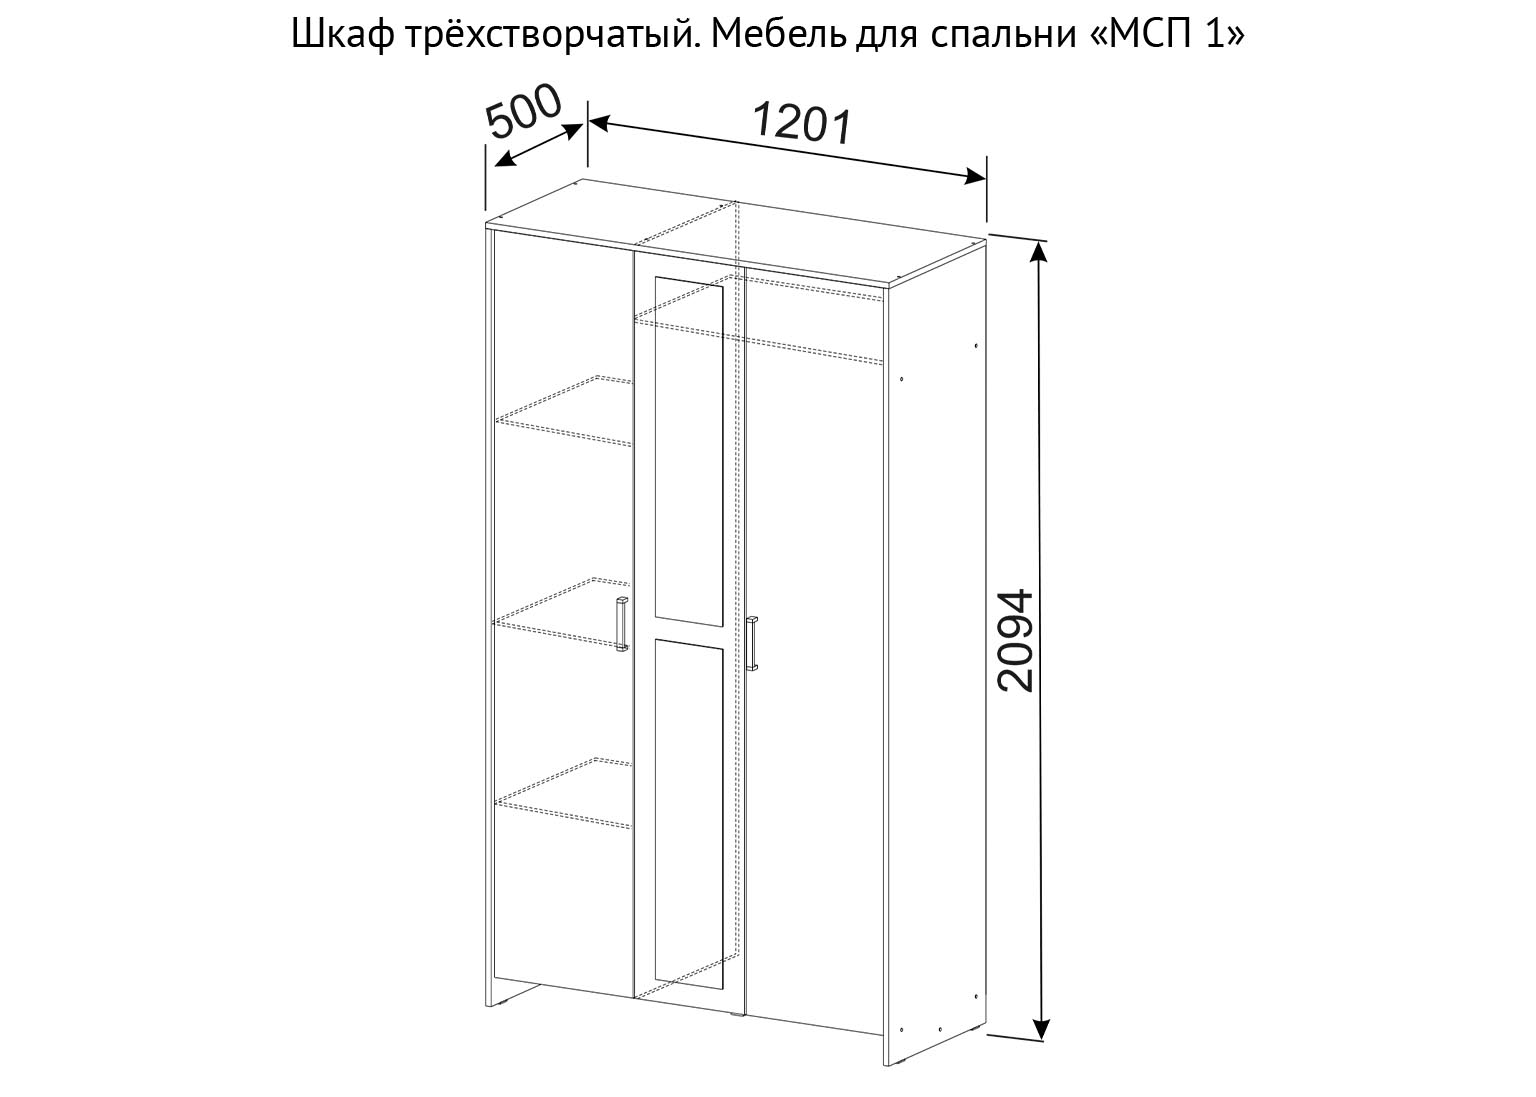 Шкаф трёхстворчатый МСП 1 схема. SV-Мебель Краснодар